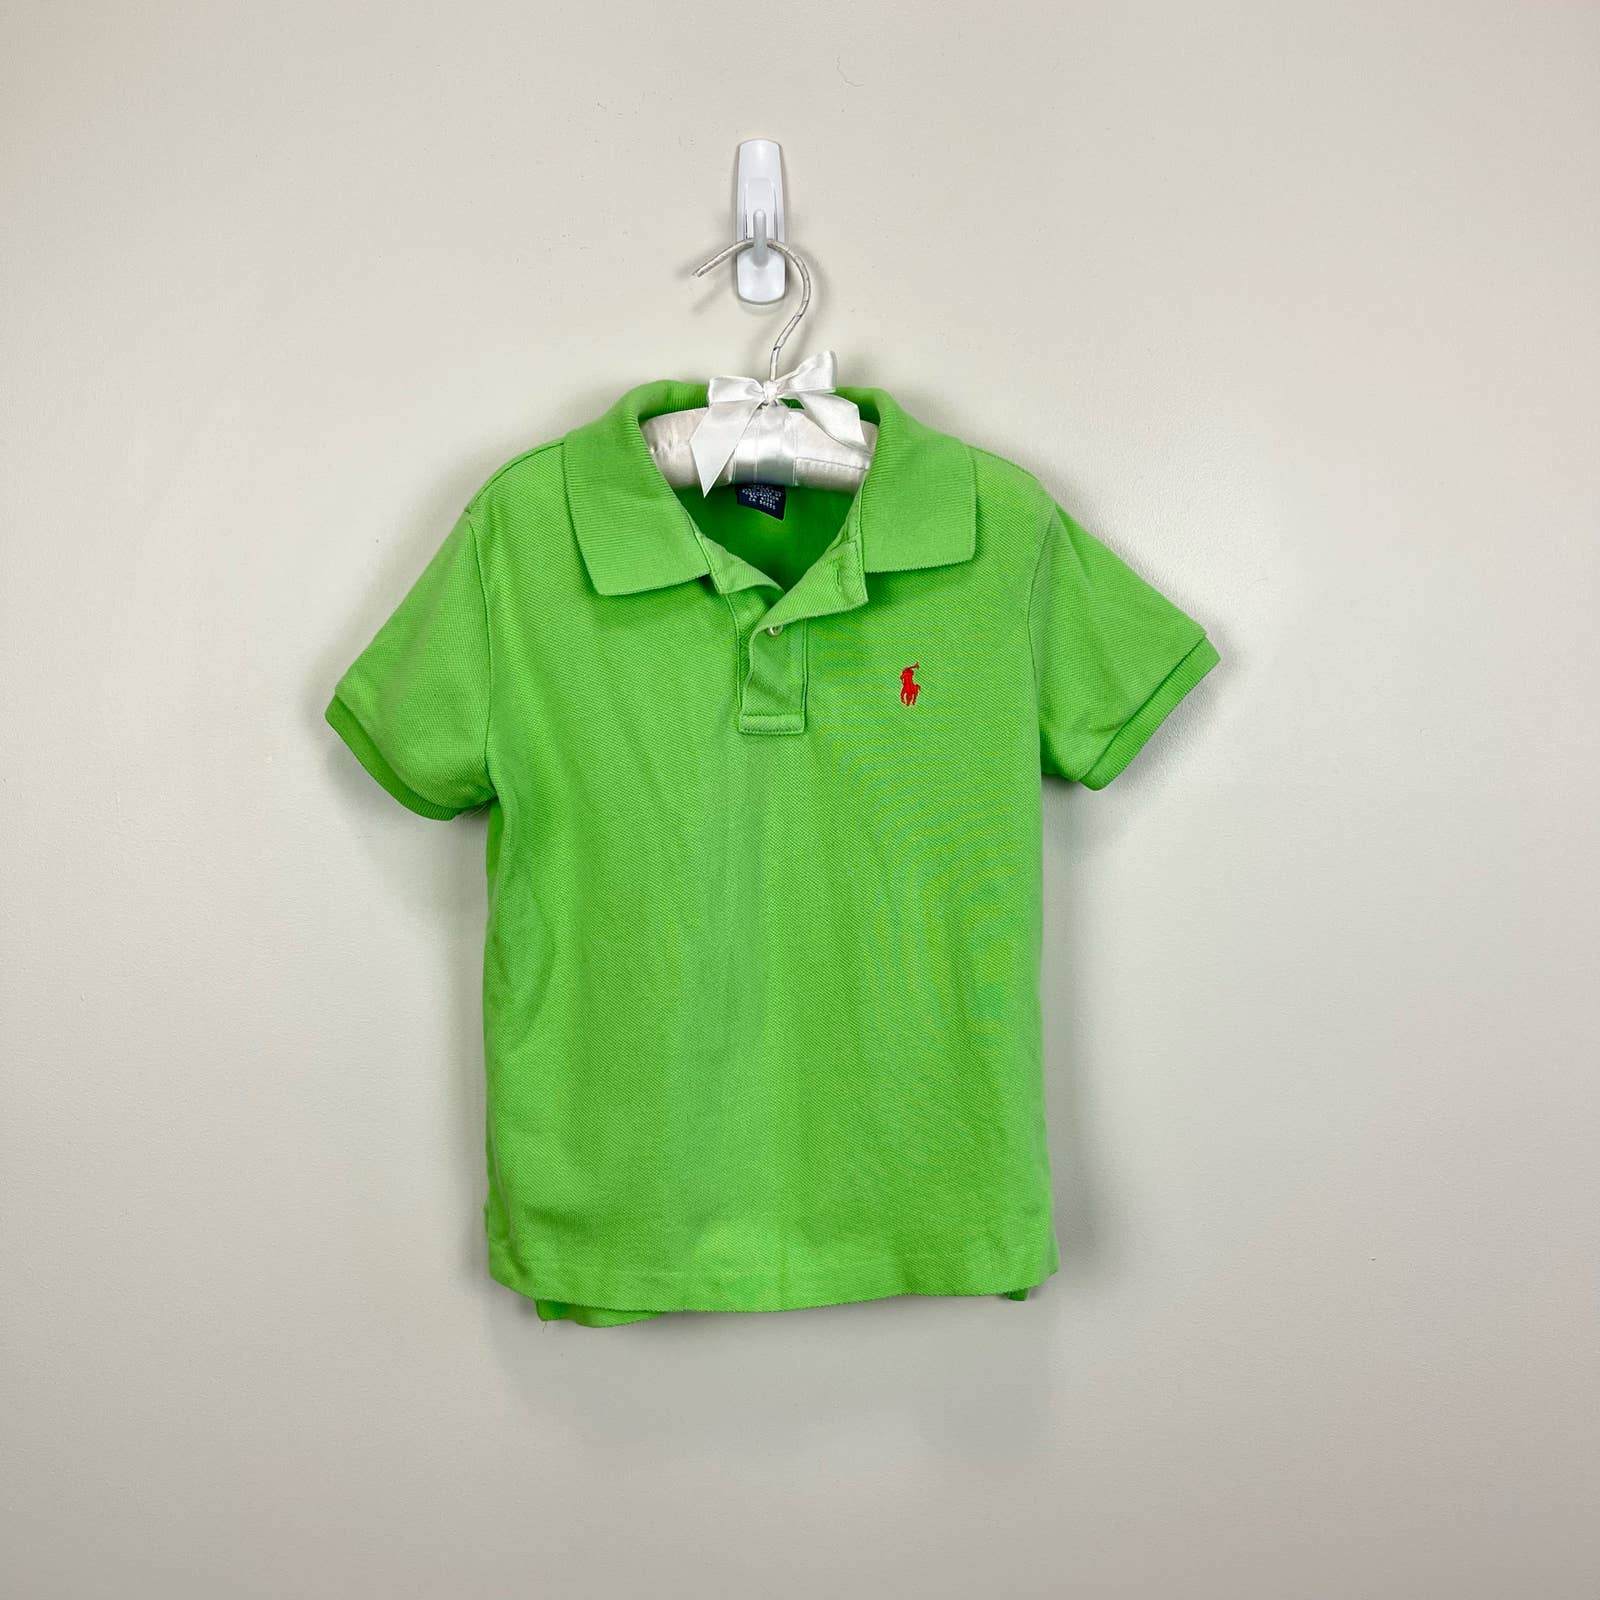 Manuscript wimper Chip Ralph Lauren Boys Green Polo Shirt 3T – andescloset91